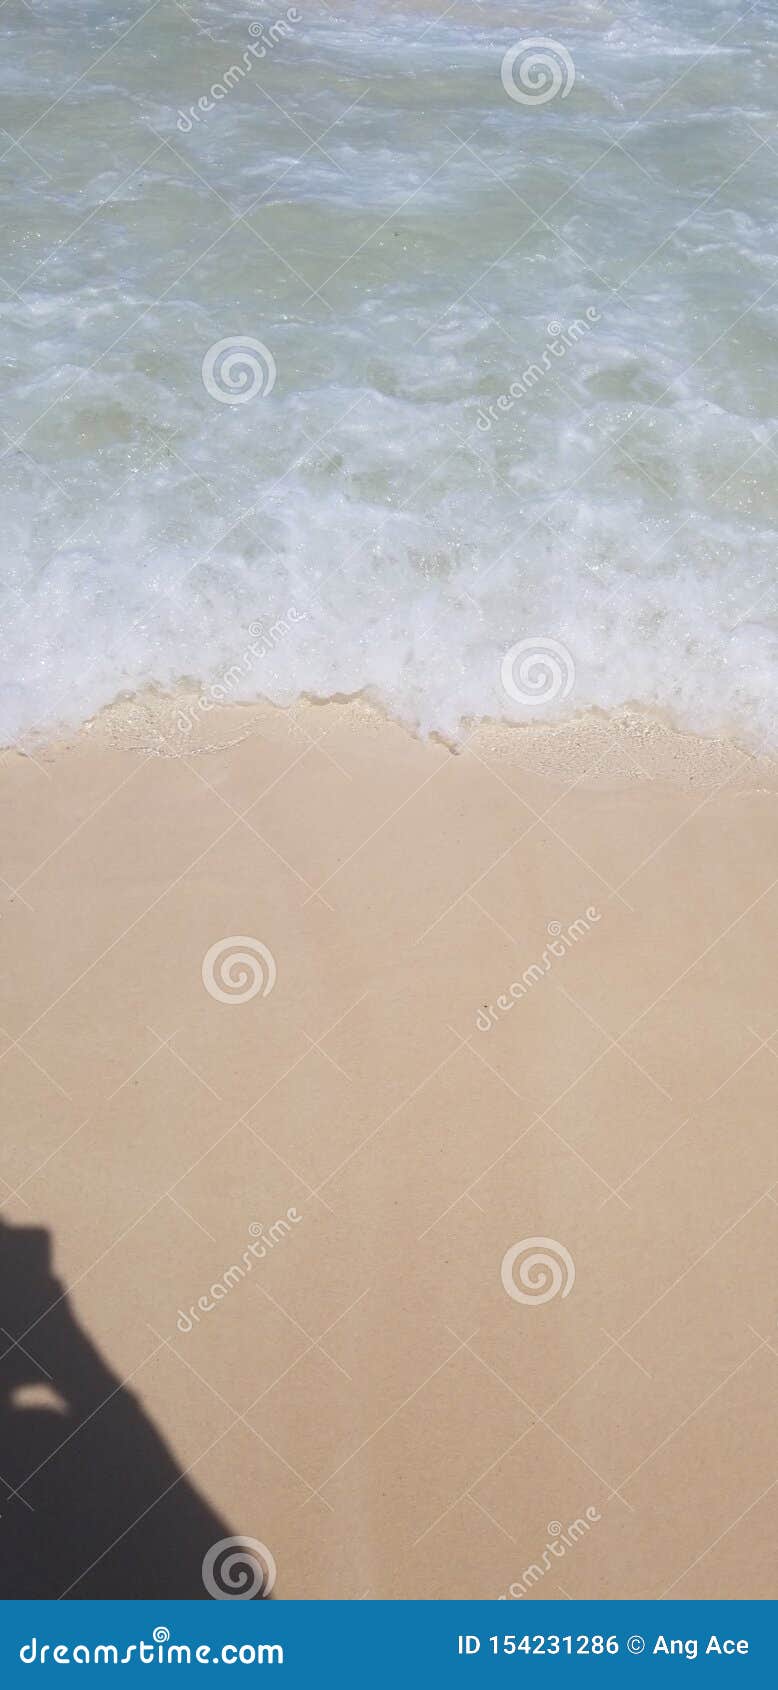 waves crashing on shore